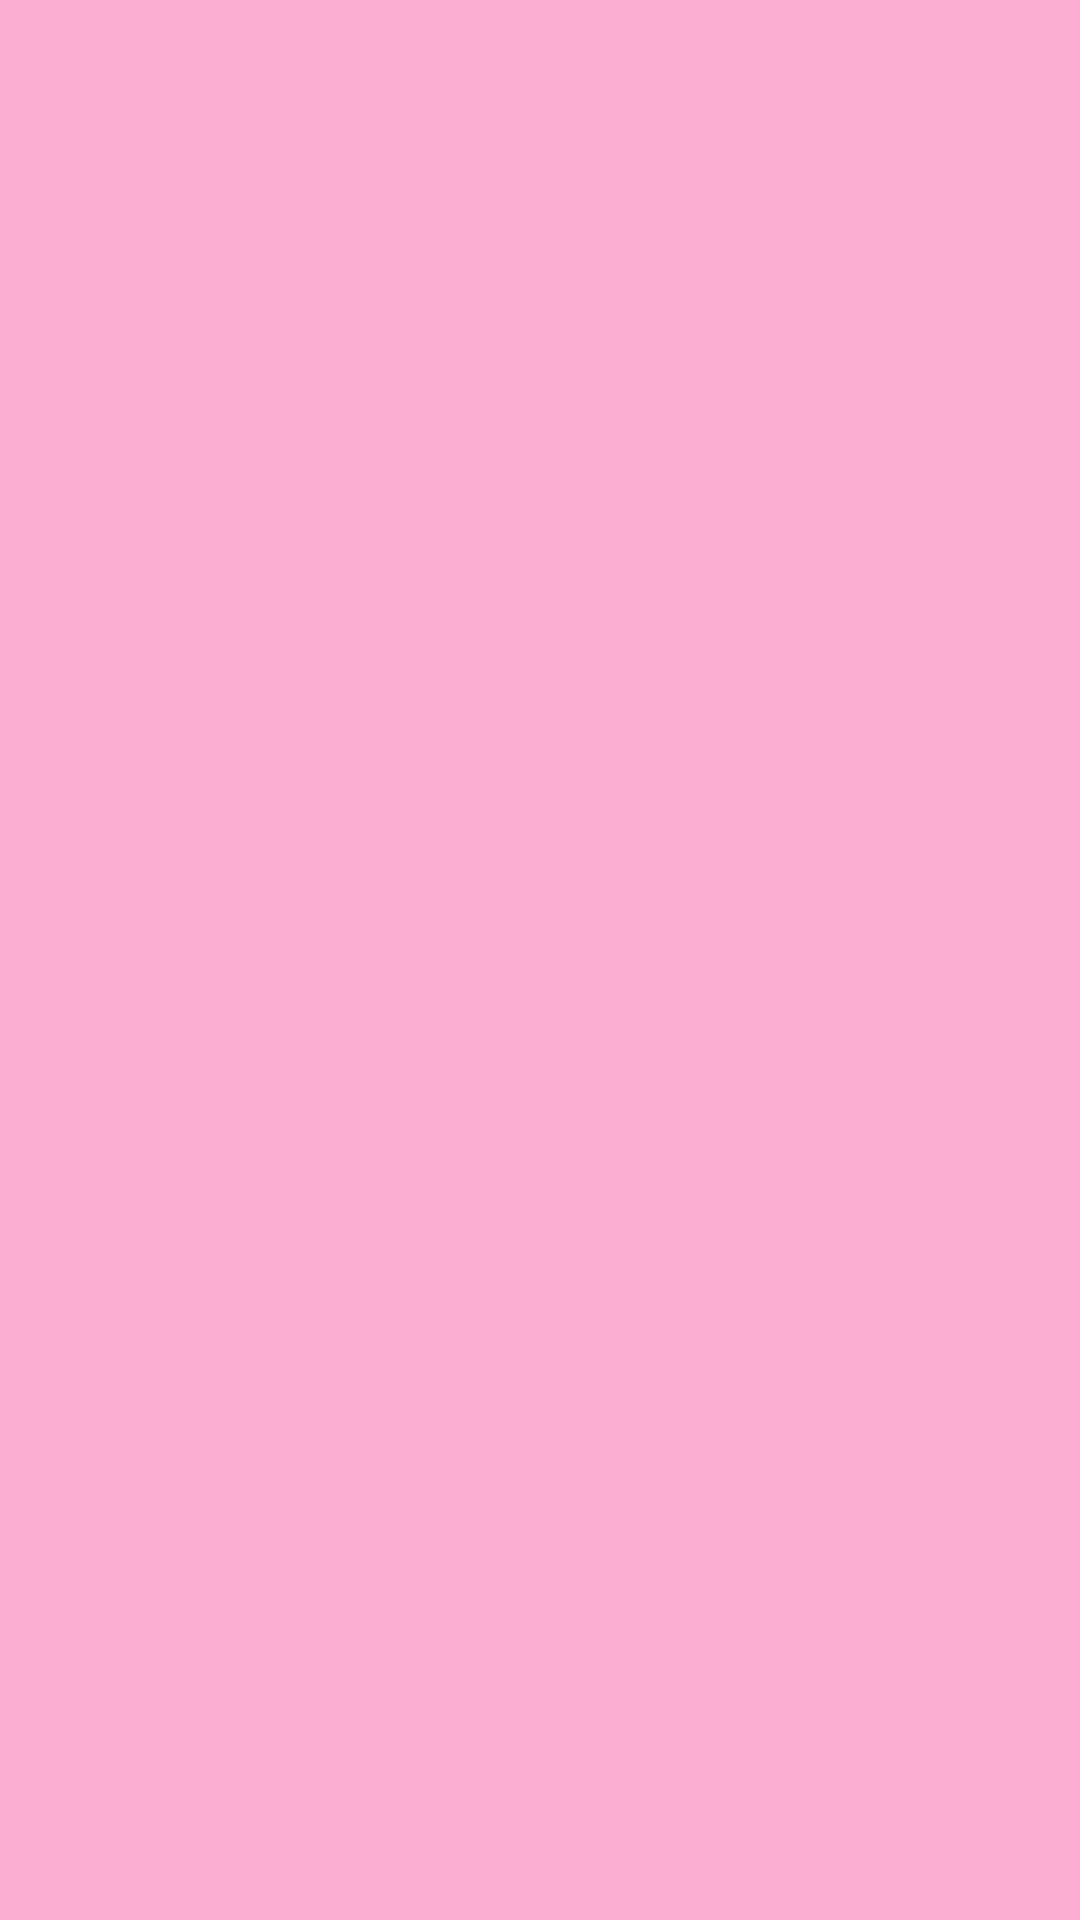 1080x1920 Lavender Pink Solid Color Background